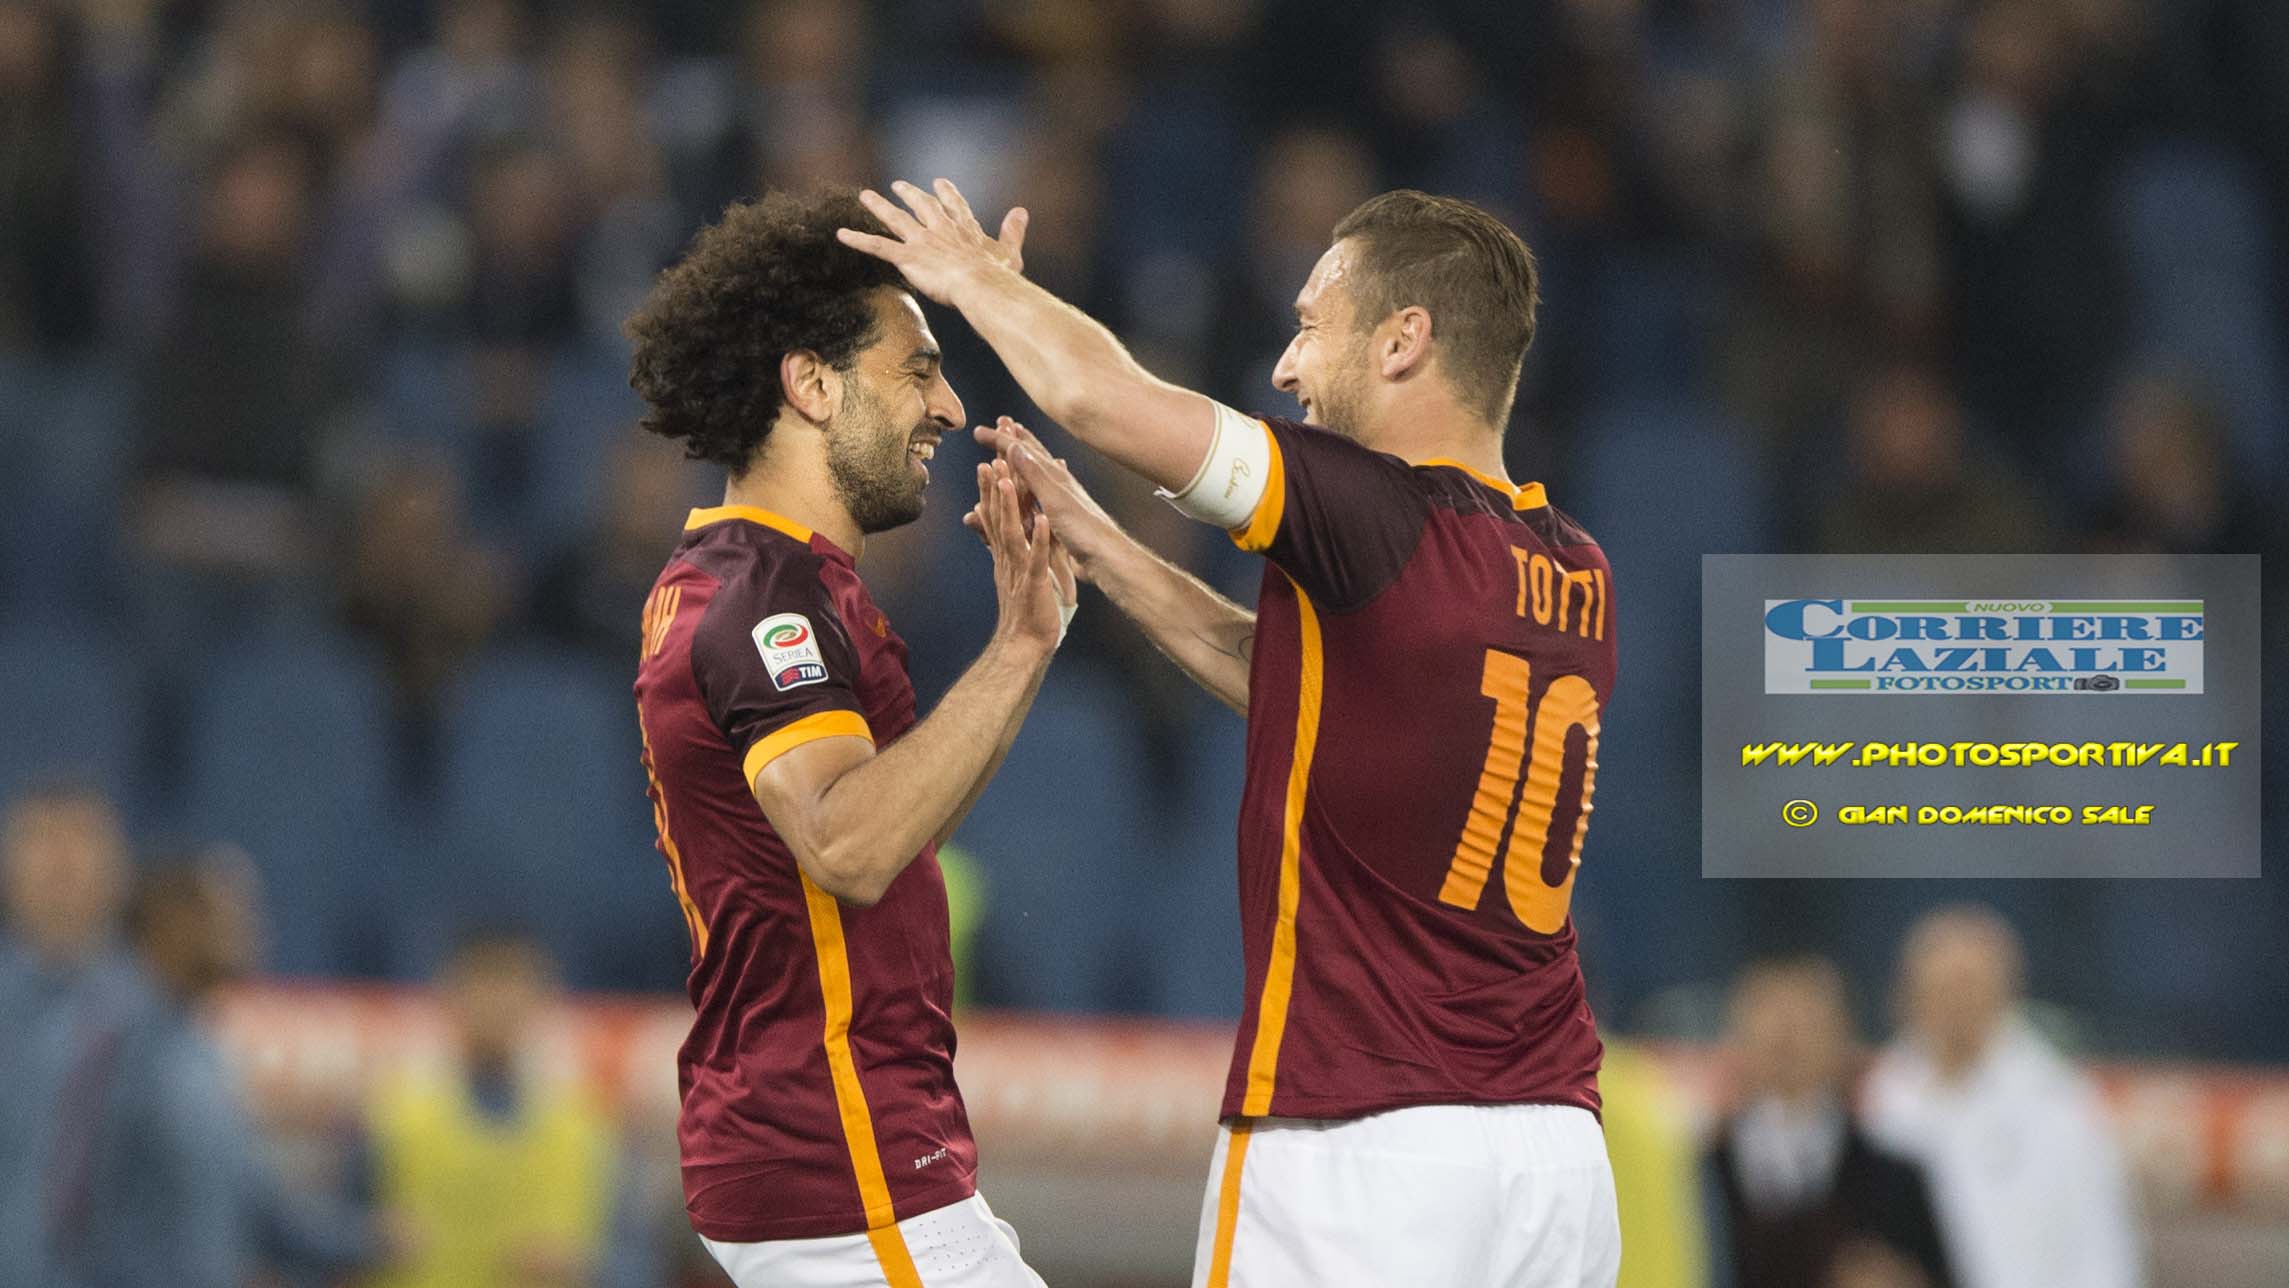 Serie A, entra Totti e la Roma rimonta, al Ferraris è 2-3 per i giallorossi